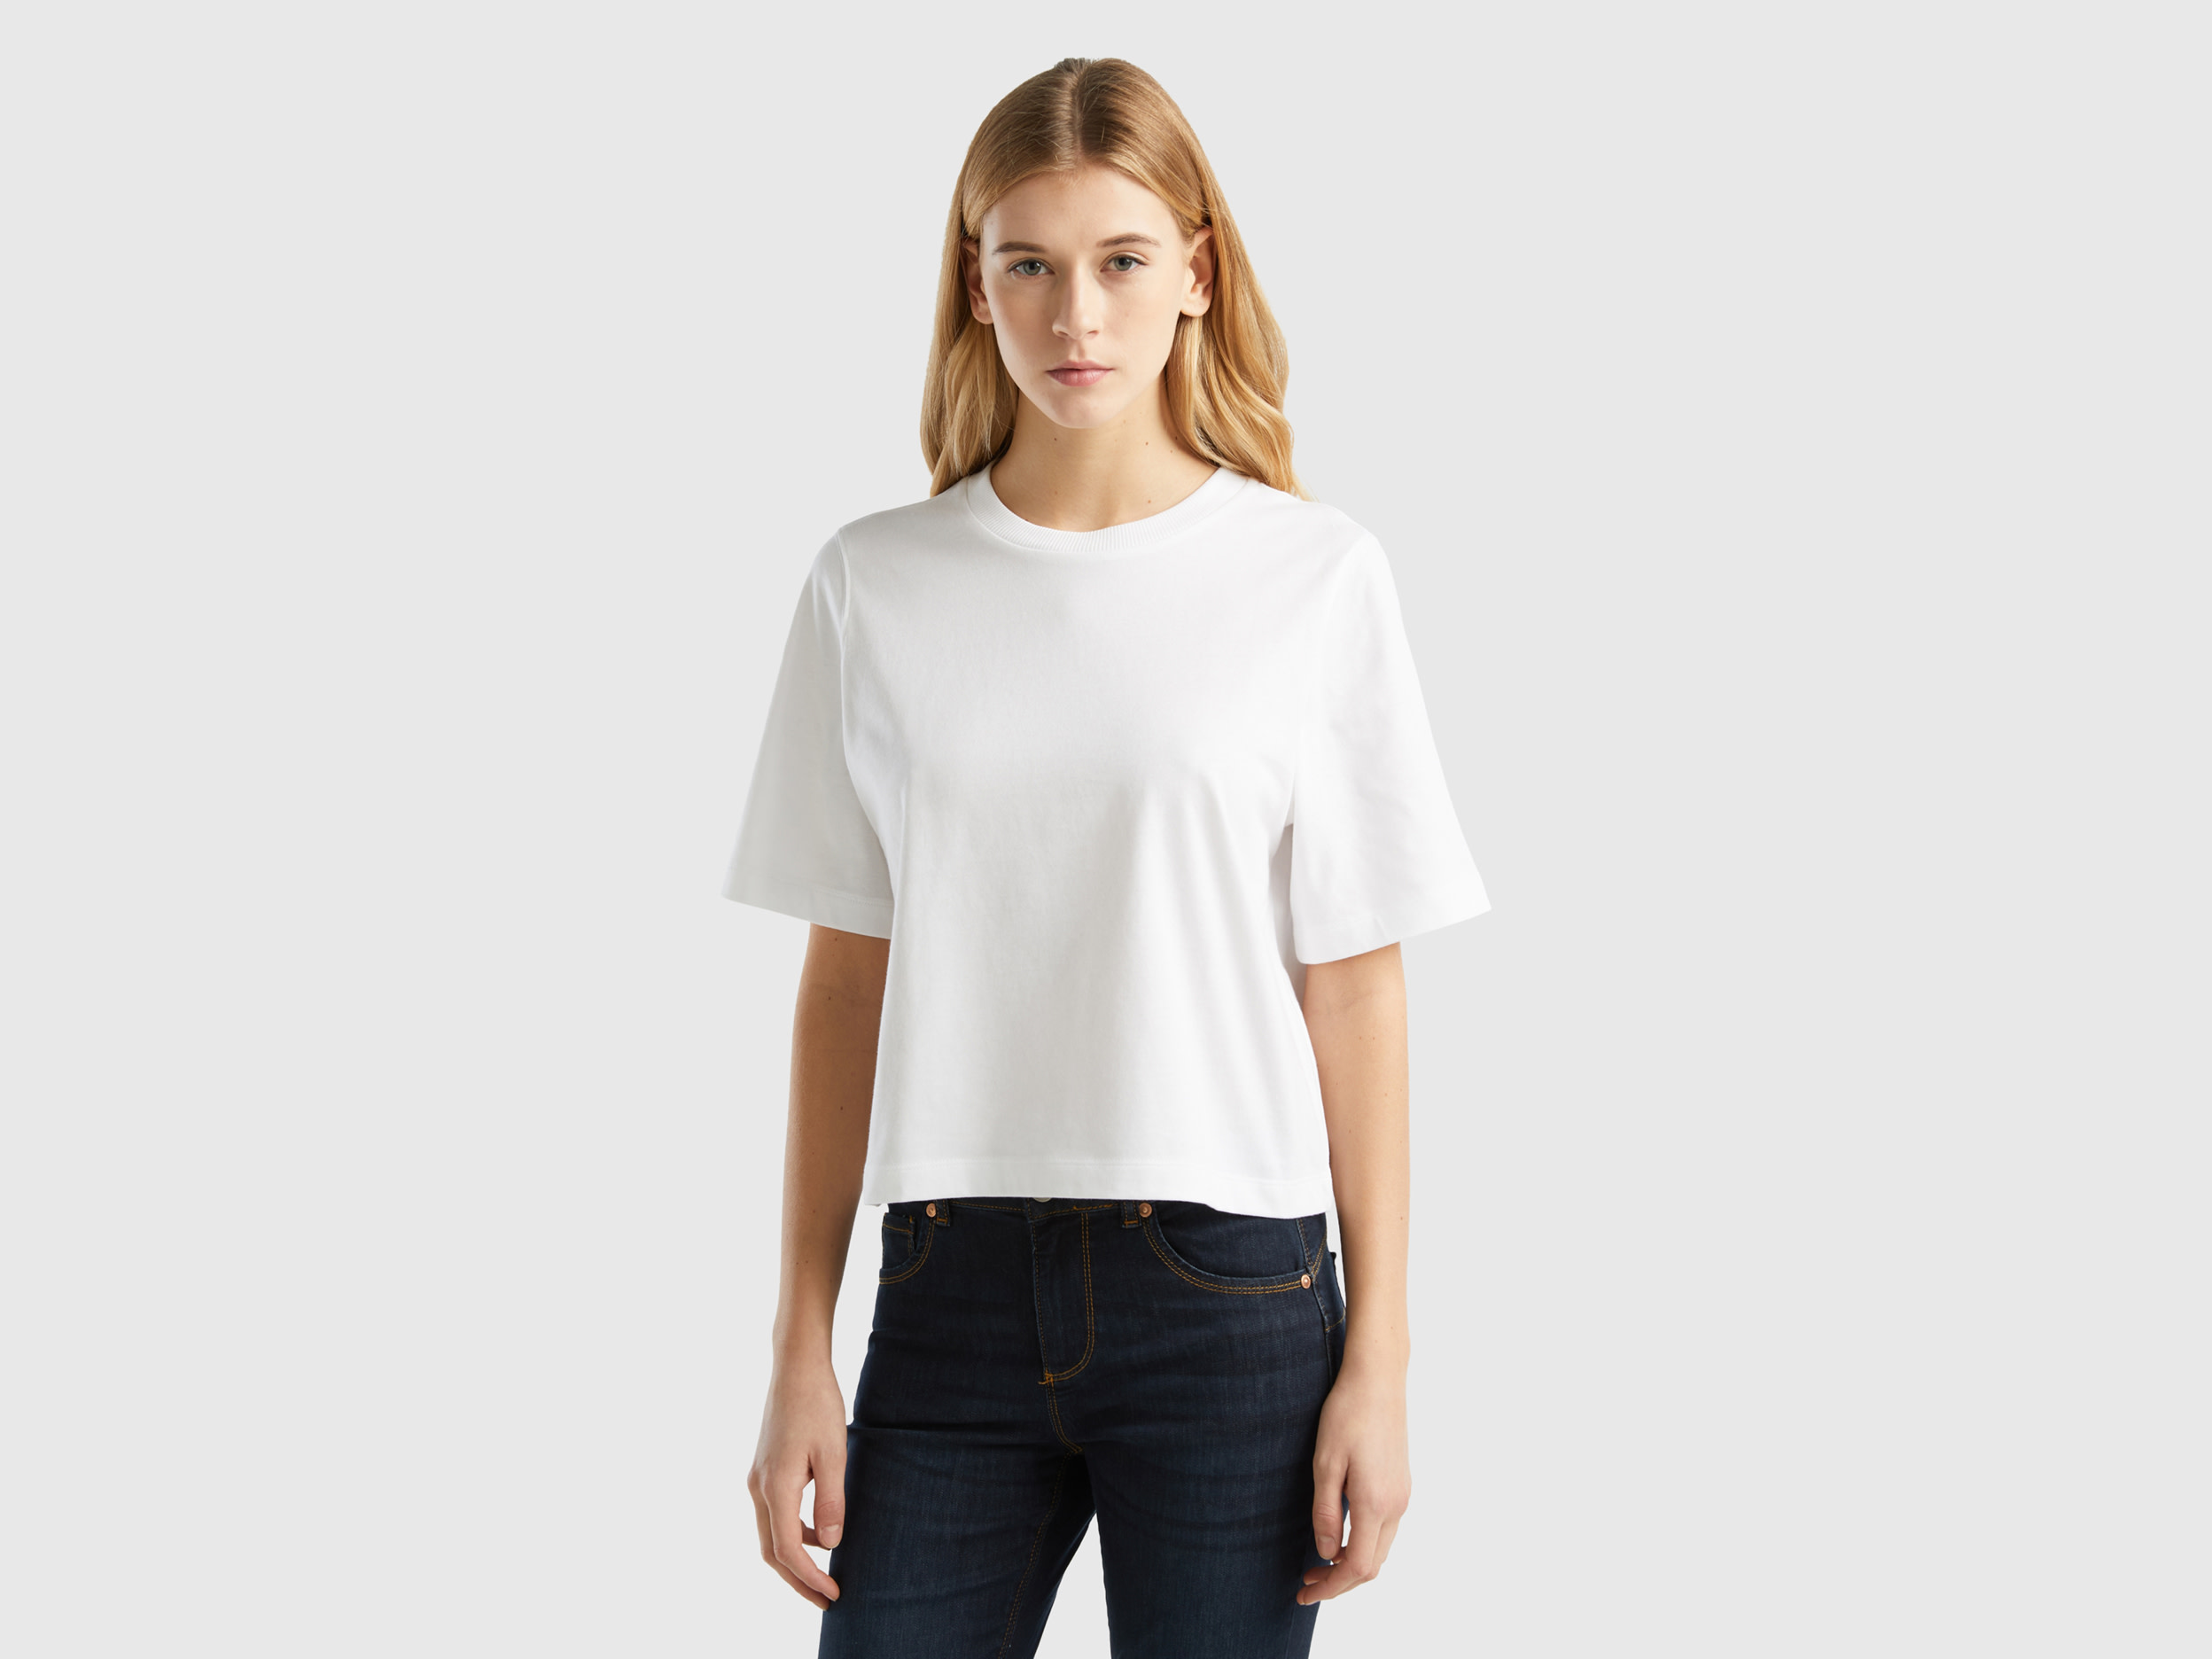 Benetton, 100% Cotton Boxy Fit T-shirt, size XL, White, Women